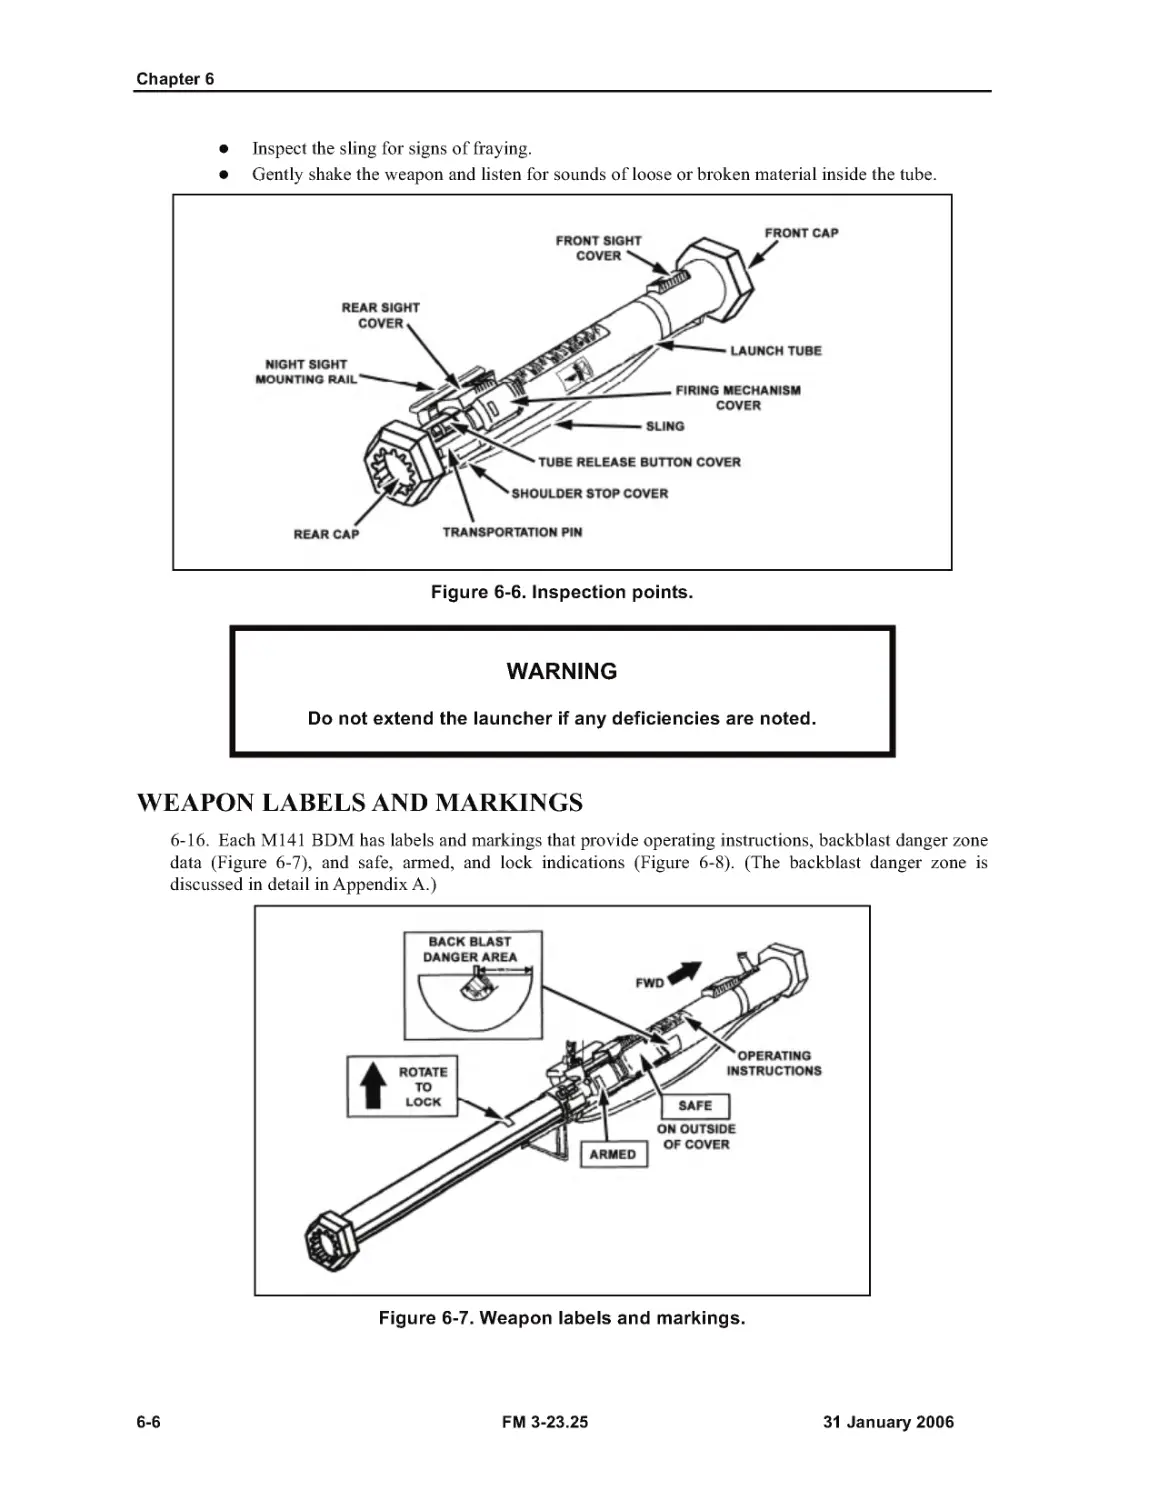 Figure 6-6. Inspection points.
Figure 6-7. Weapon labels and markings.
WEAPON LABELS AND MARKINGS